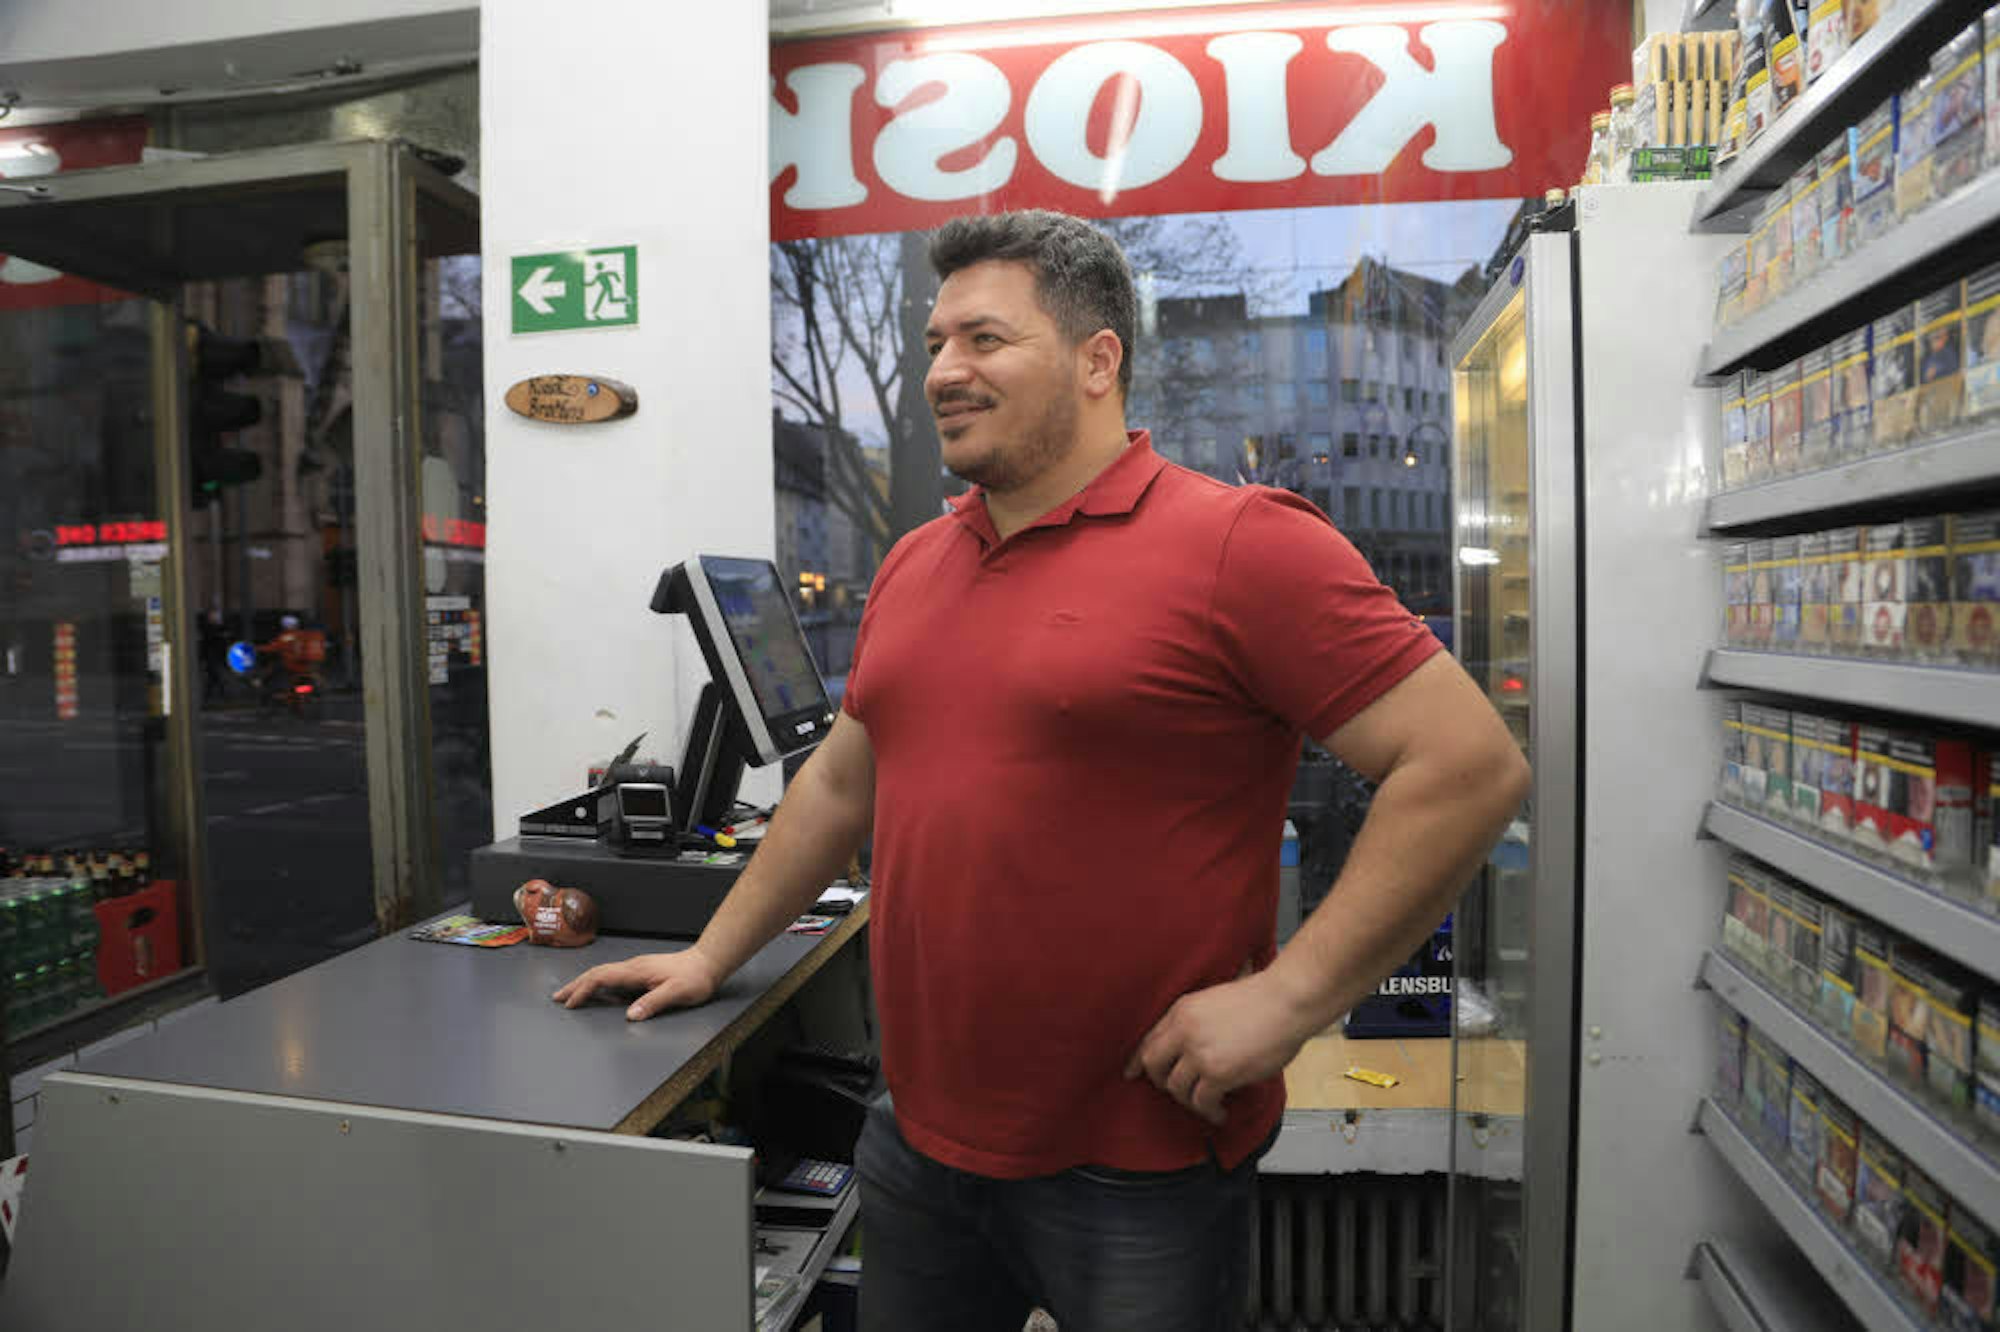 Kioskbesitzer Durmus Arslan freut sich auf mehr Umsatz.